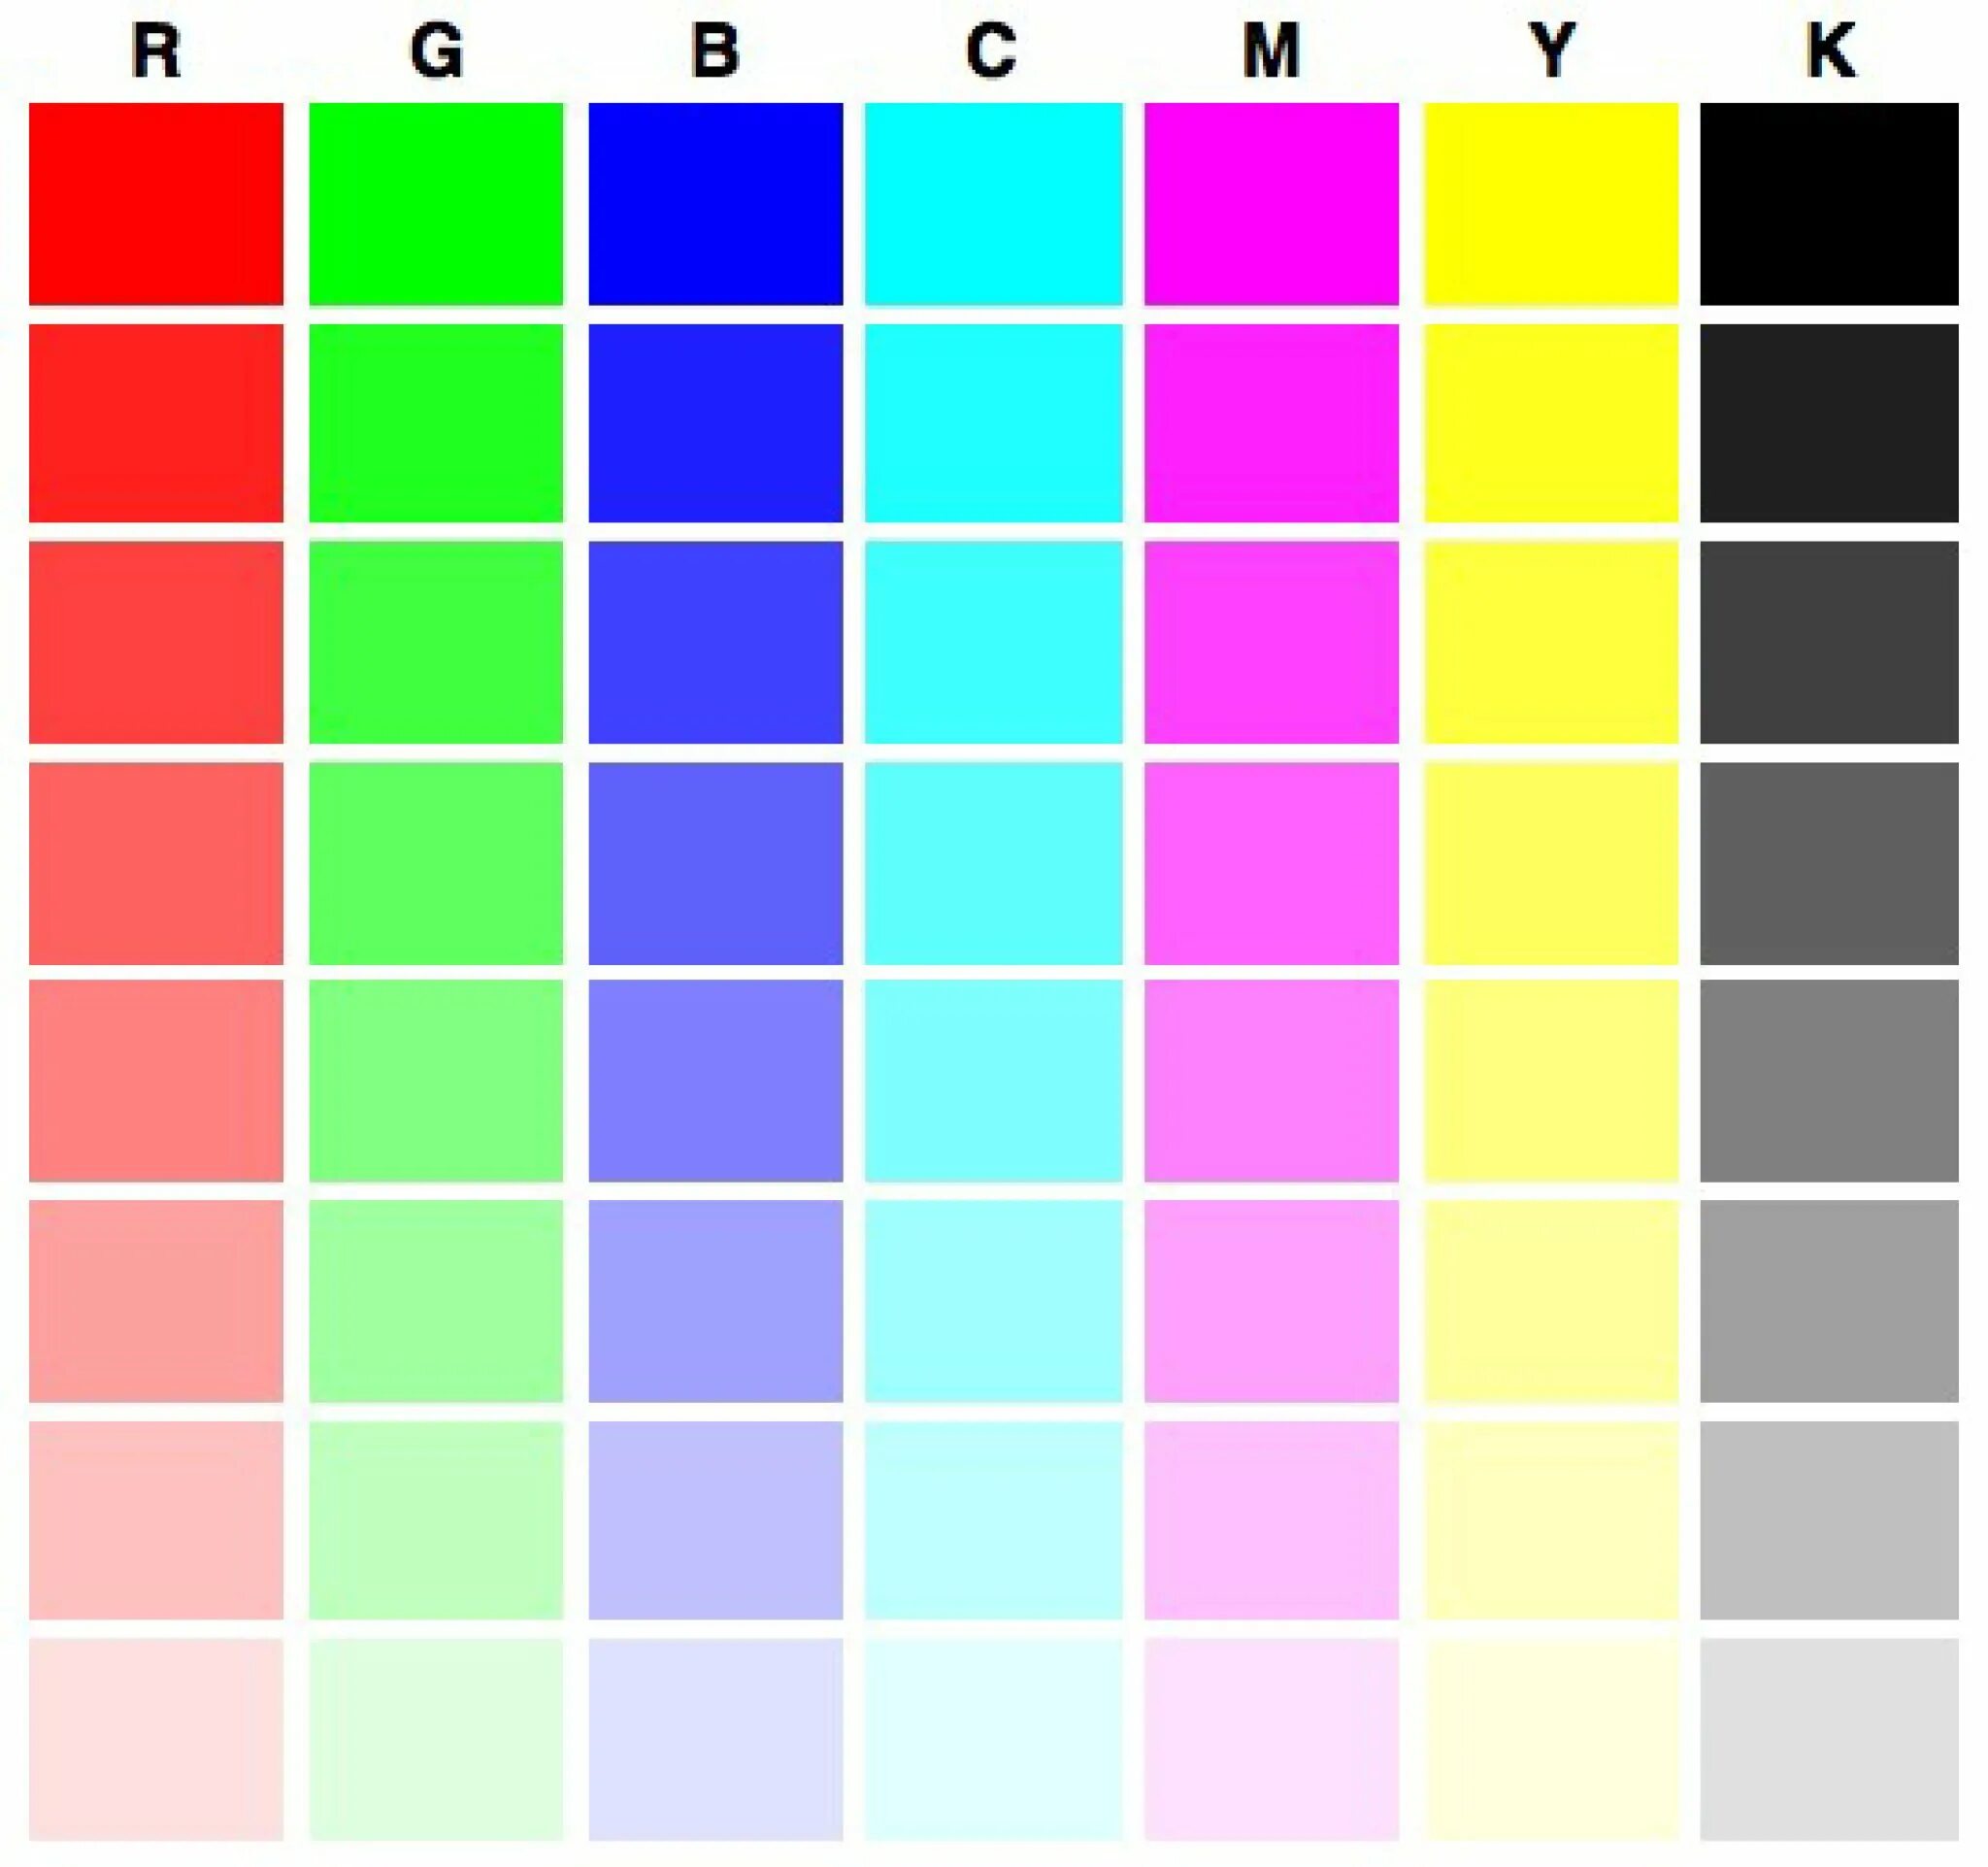 Тестовая страница для принтера Epson l800. Тест принтера Эпсон 6 цветов. Тест принтера Эпсон 4 цвета. Проверочная таблица цветов для принтера Эпсон. Картинка цветная для принтера